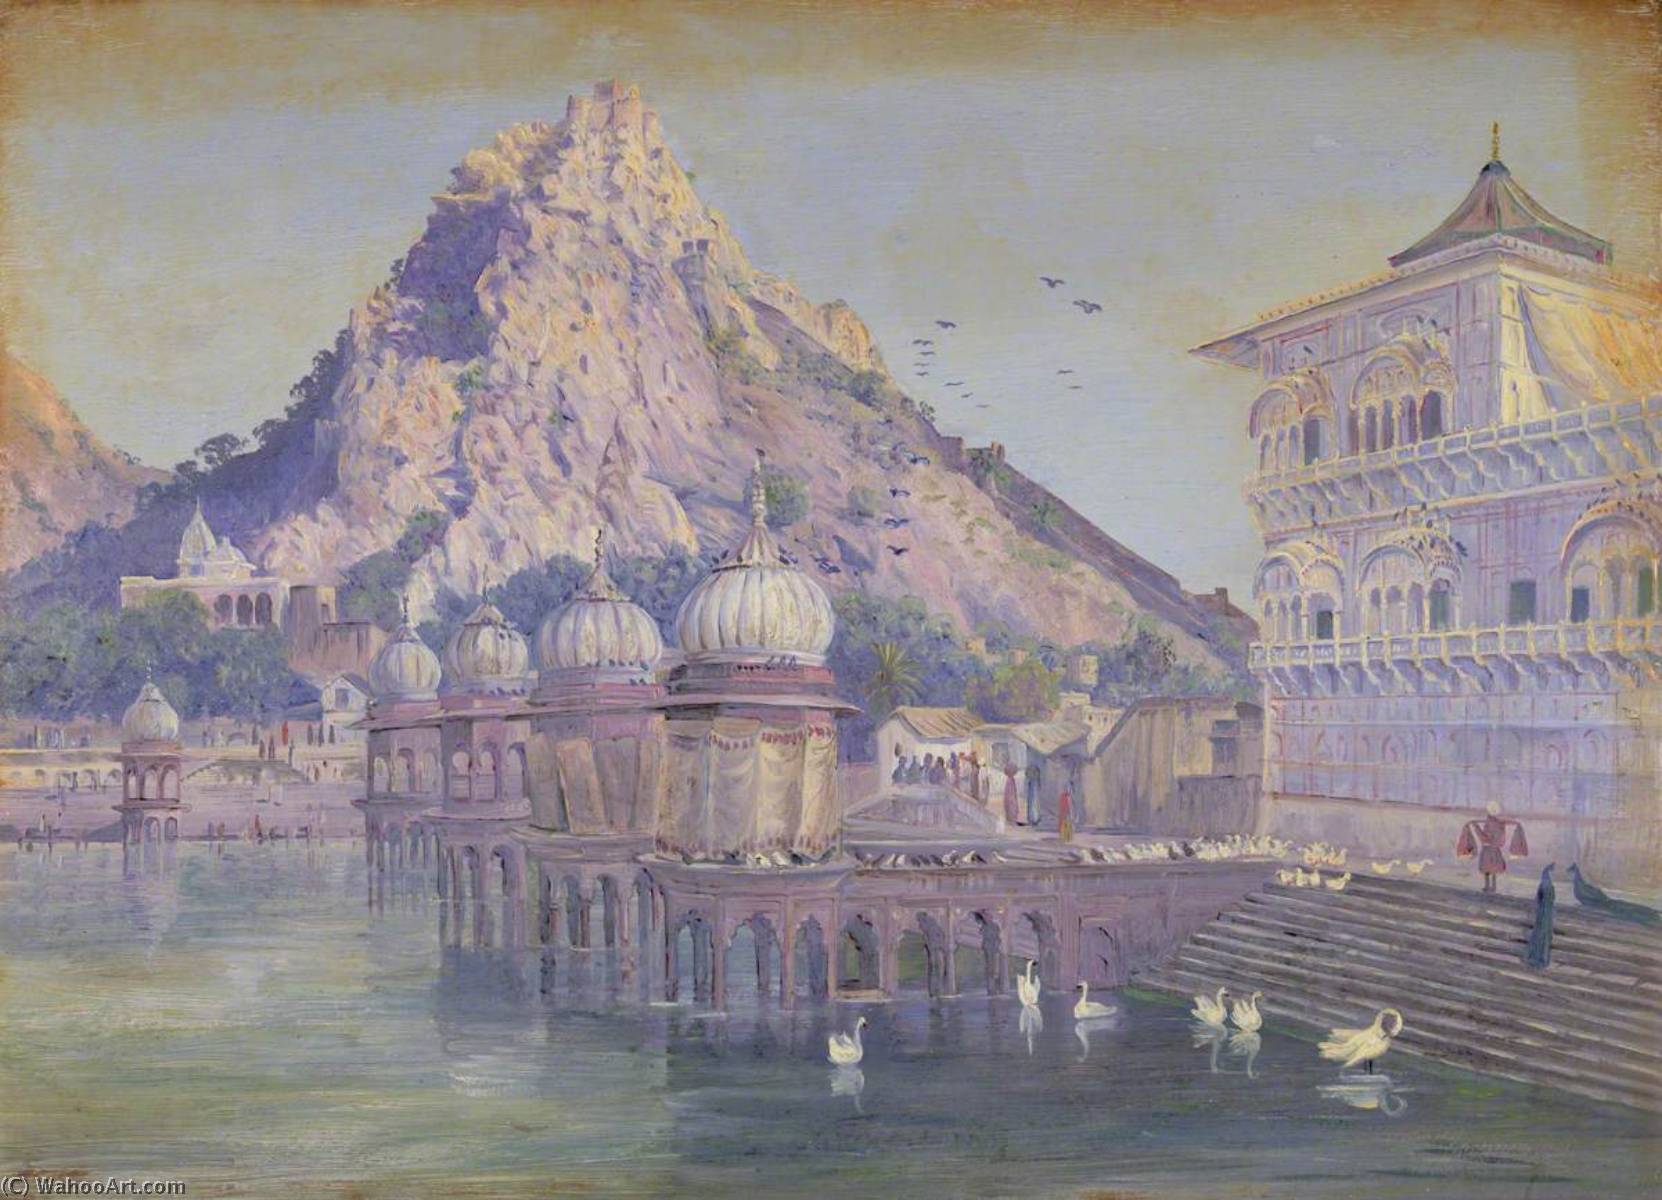 Bestellen Museumsqualität Prints Indien. Nov. 1878 `, 1878 von Marianne North (1830-1890, United Kingdom) | ArtsDot.com